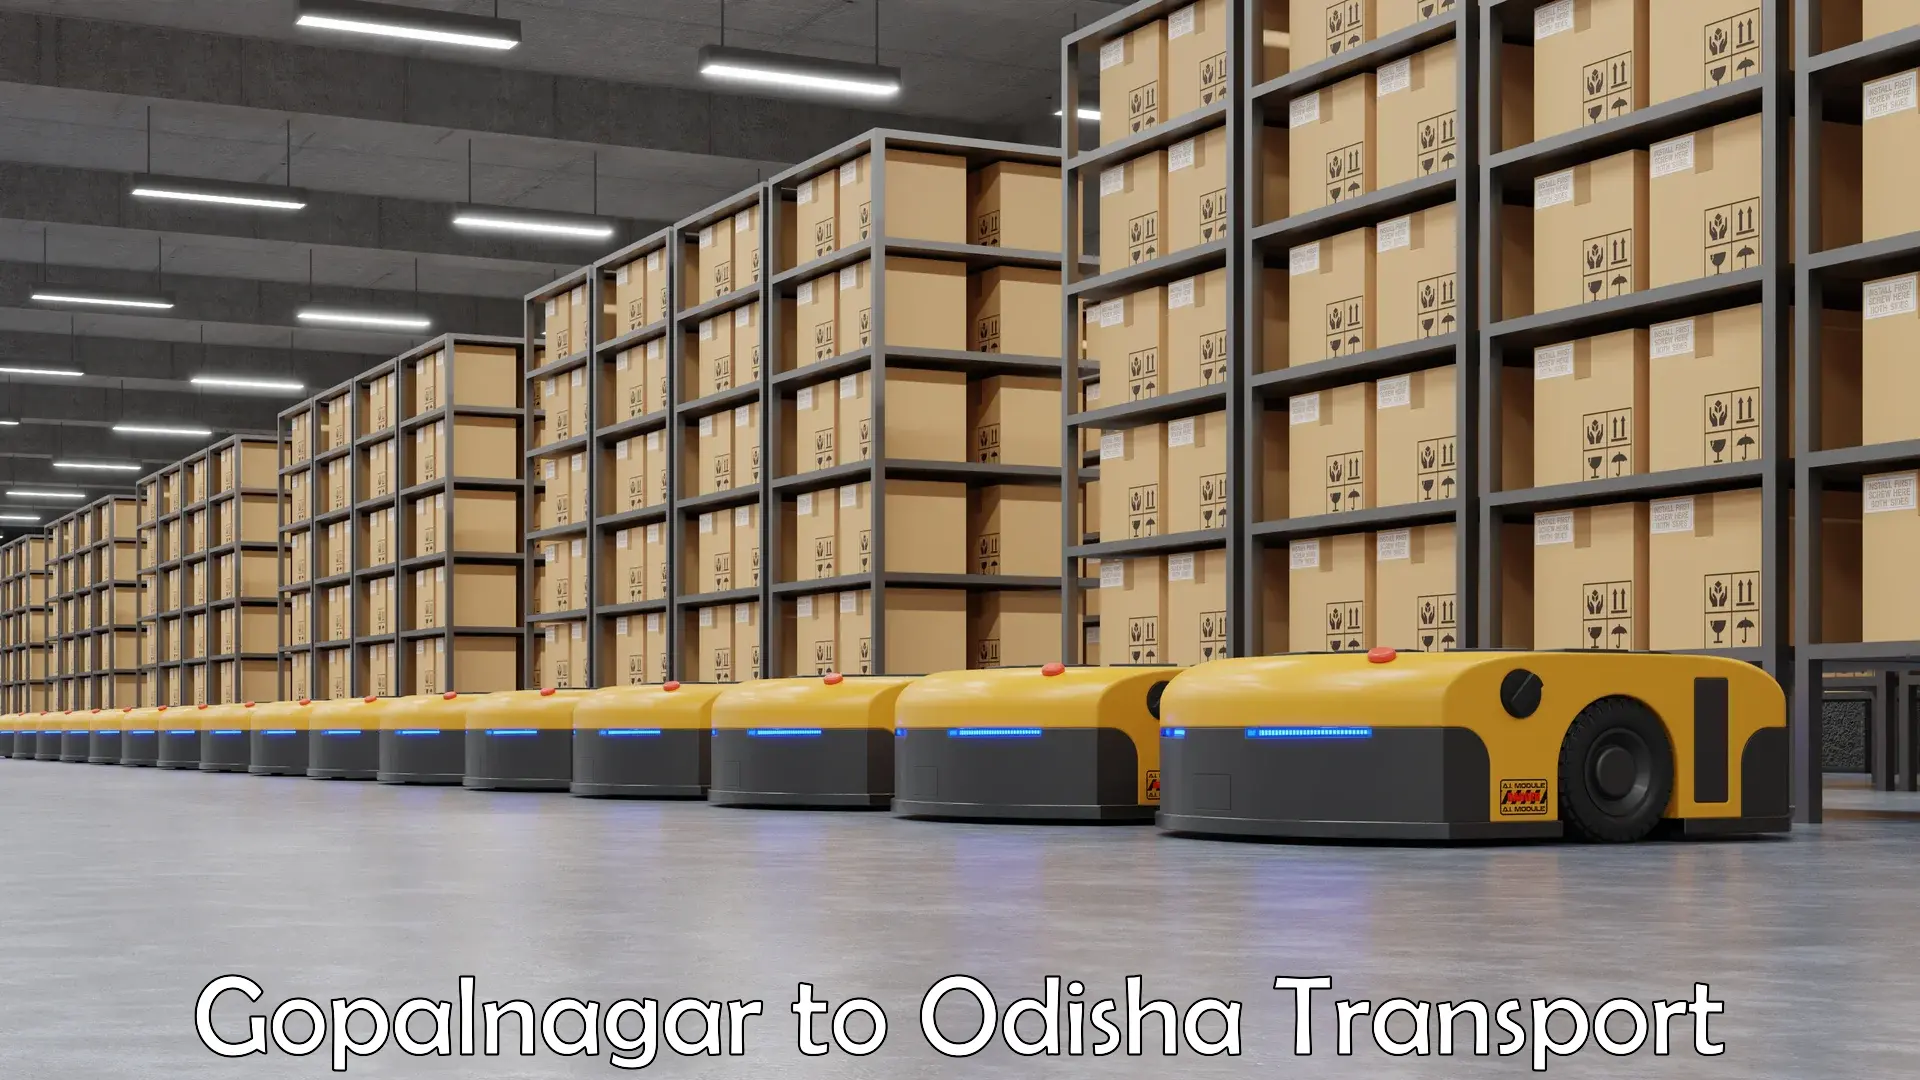 Commercial transport service Gopalnagar to Swampatna